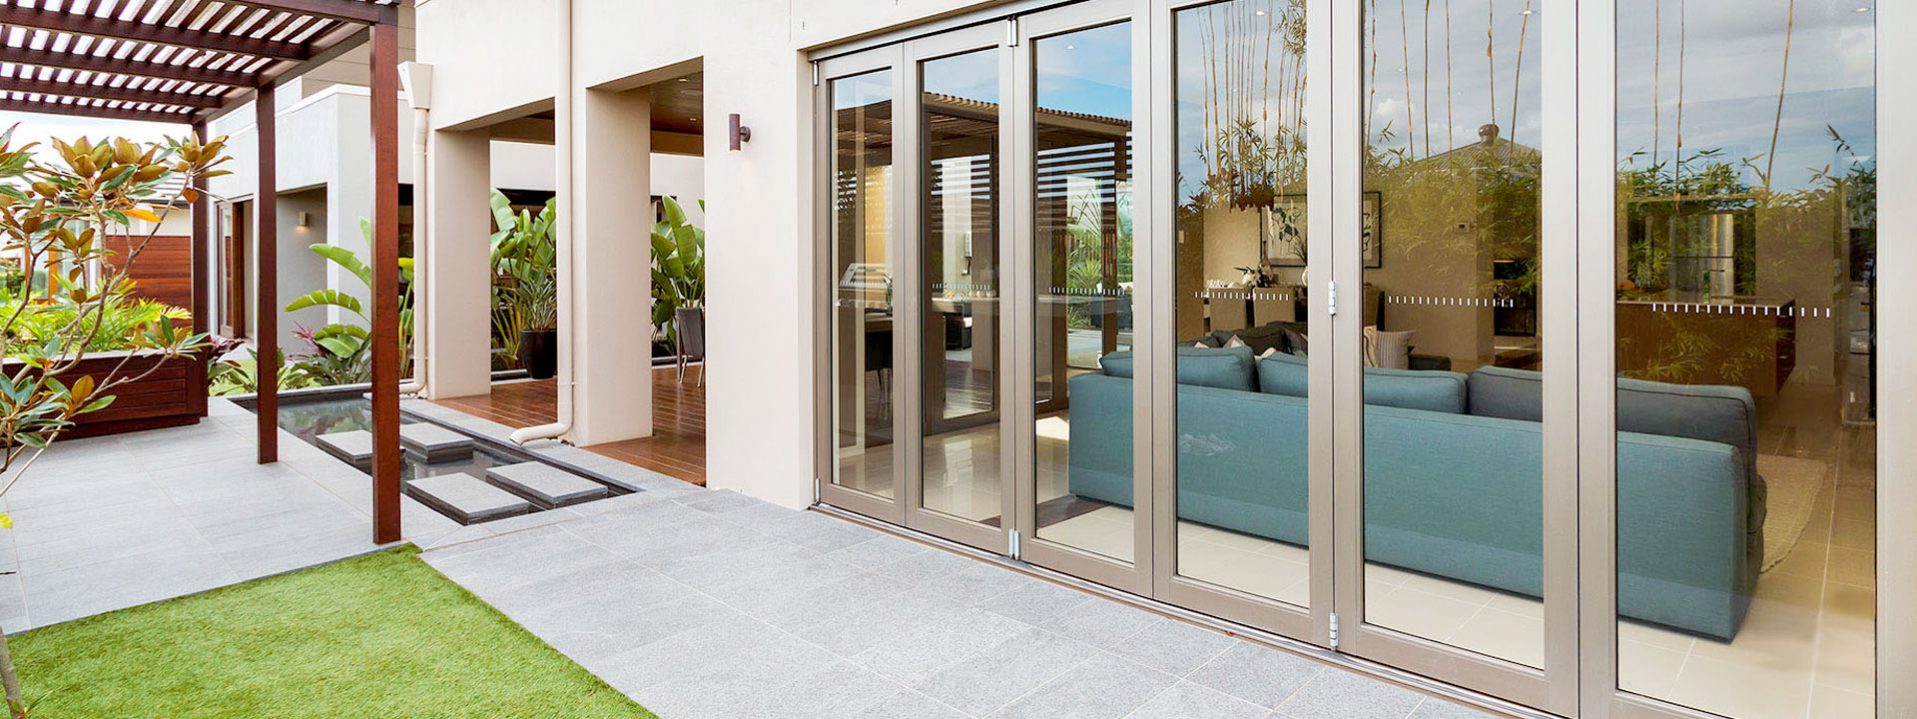 Aluminium bifold security doors located in a Malaga backyard.